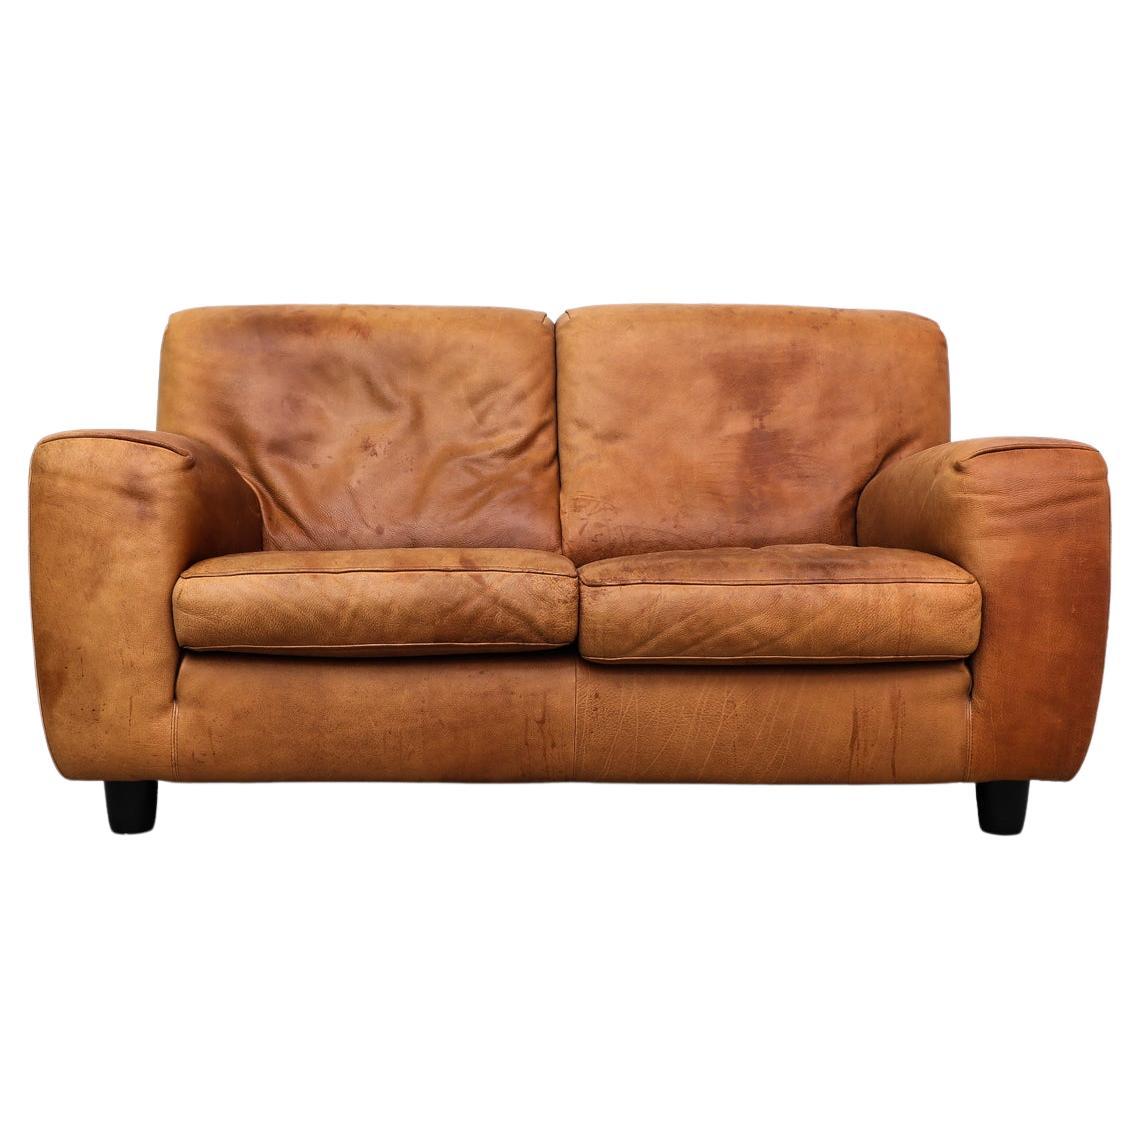 Italian Molinari ‘Fatboy’ Two-Seat Sofa in Cognac Leather